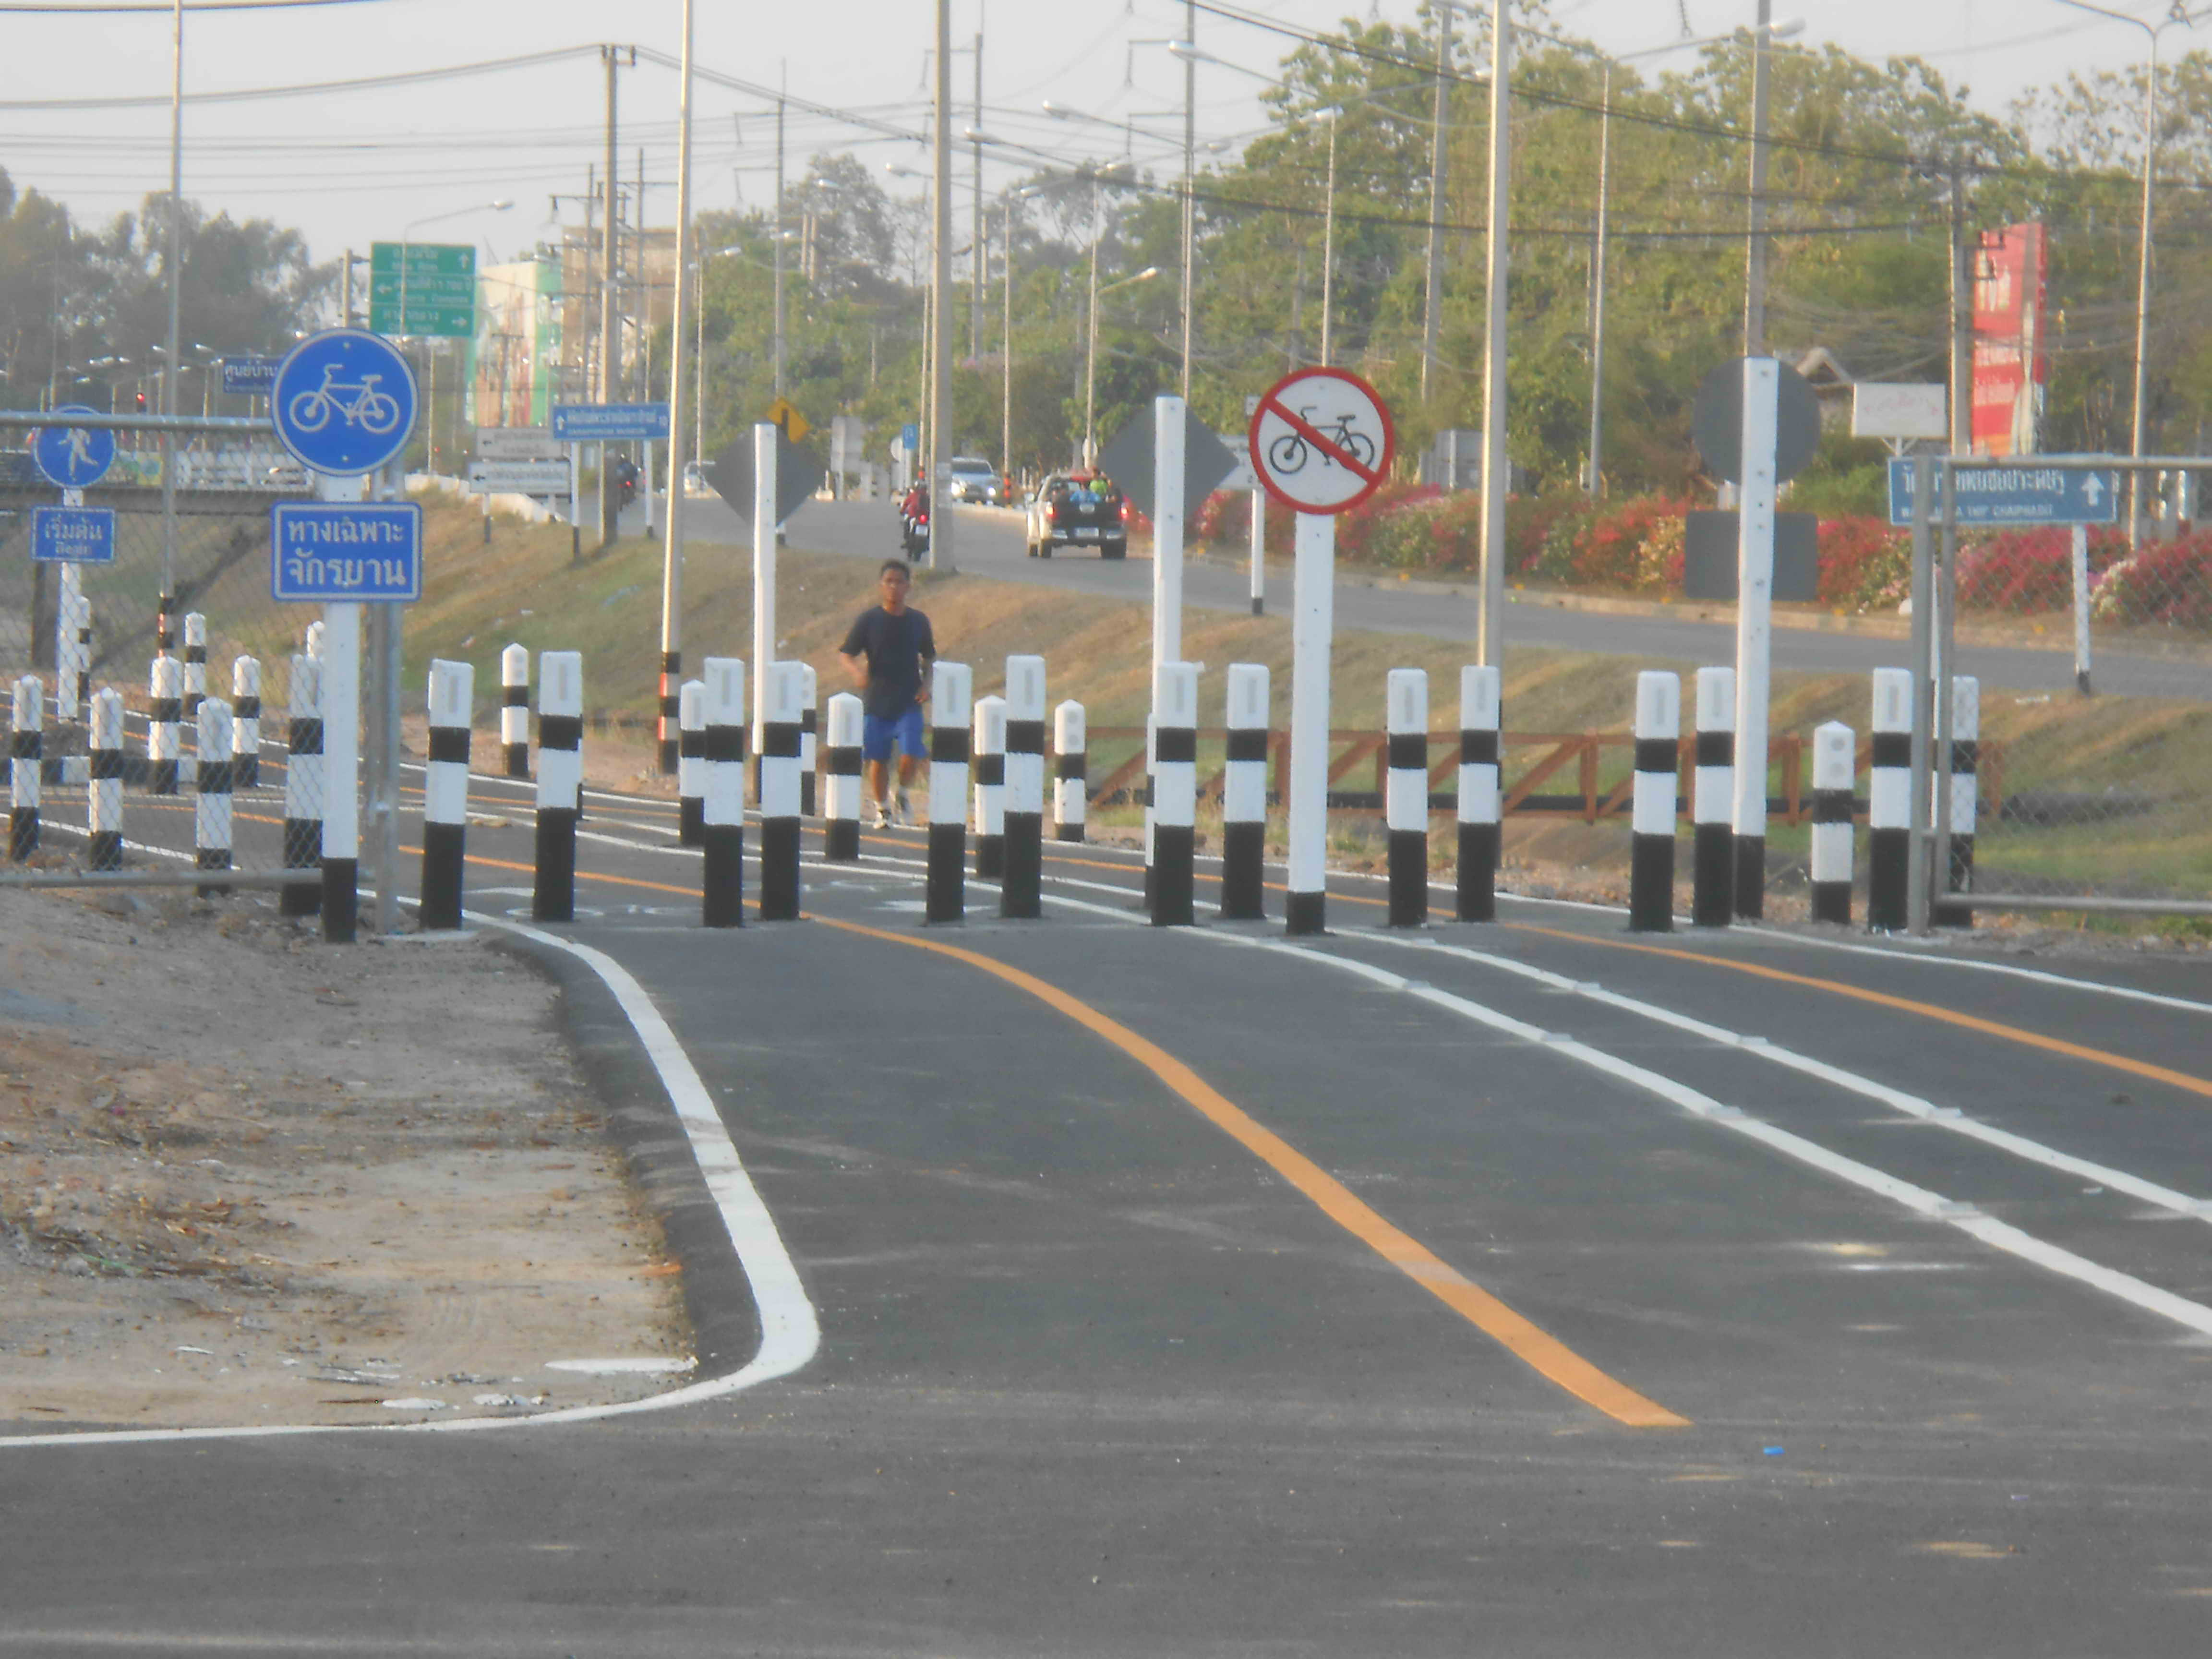 Bike Path Barriers